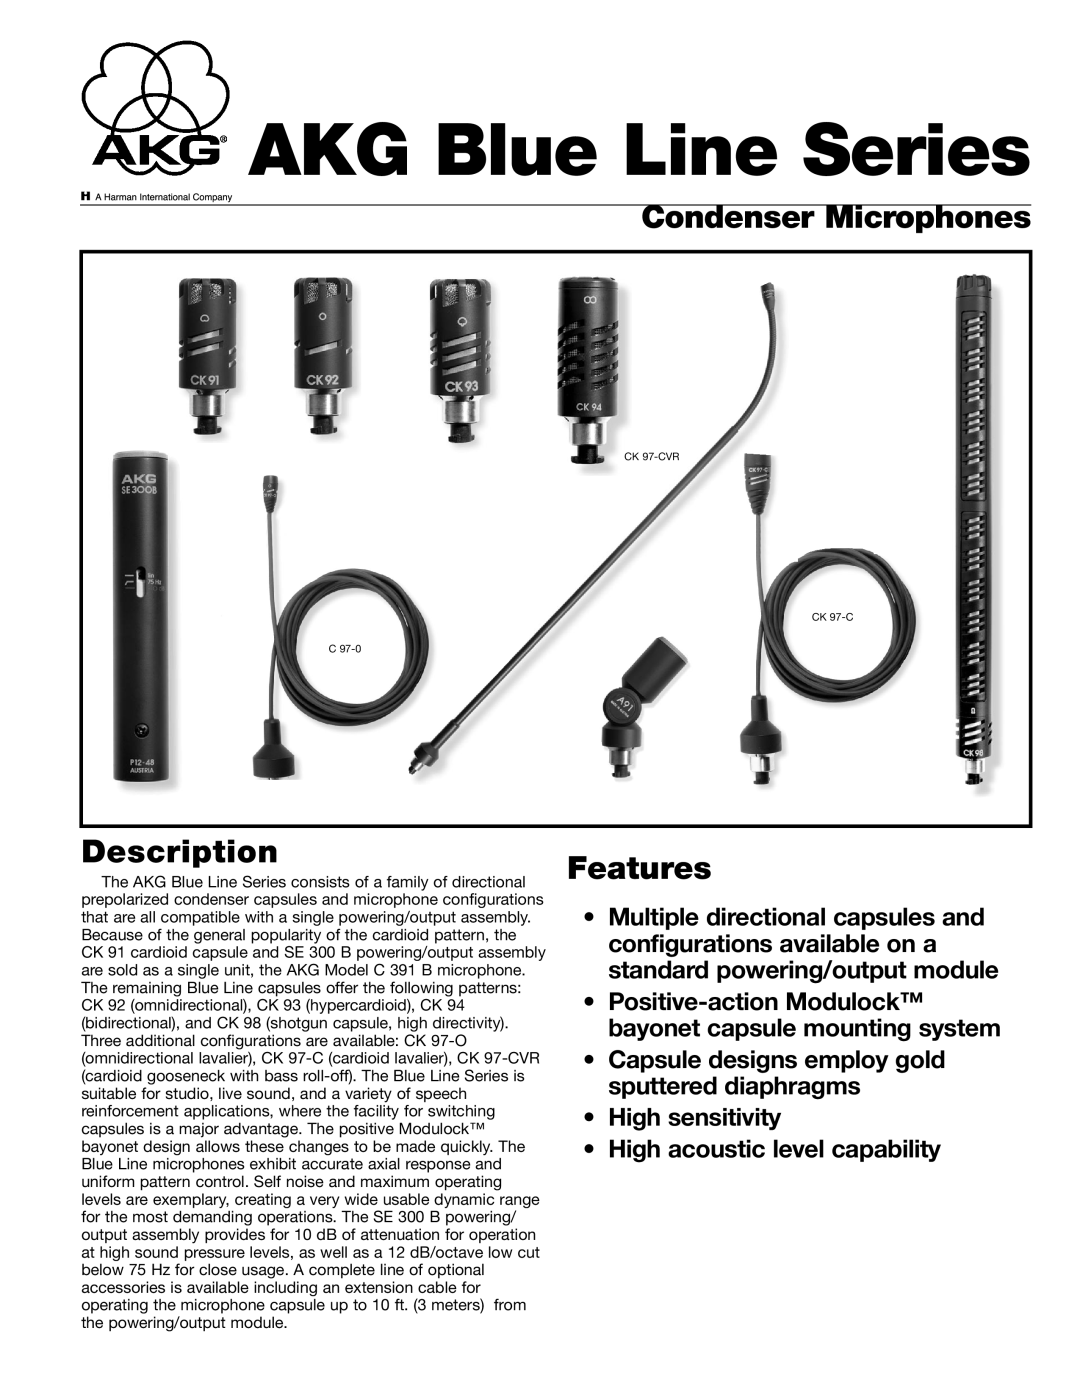 AKG Acoustics CK 97-C, C 97-0, CK 92, CK 94, CK 91 manual Condenser Microphones, Description, Features, AKG Blue Line Series 